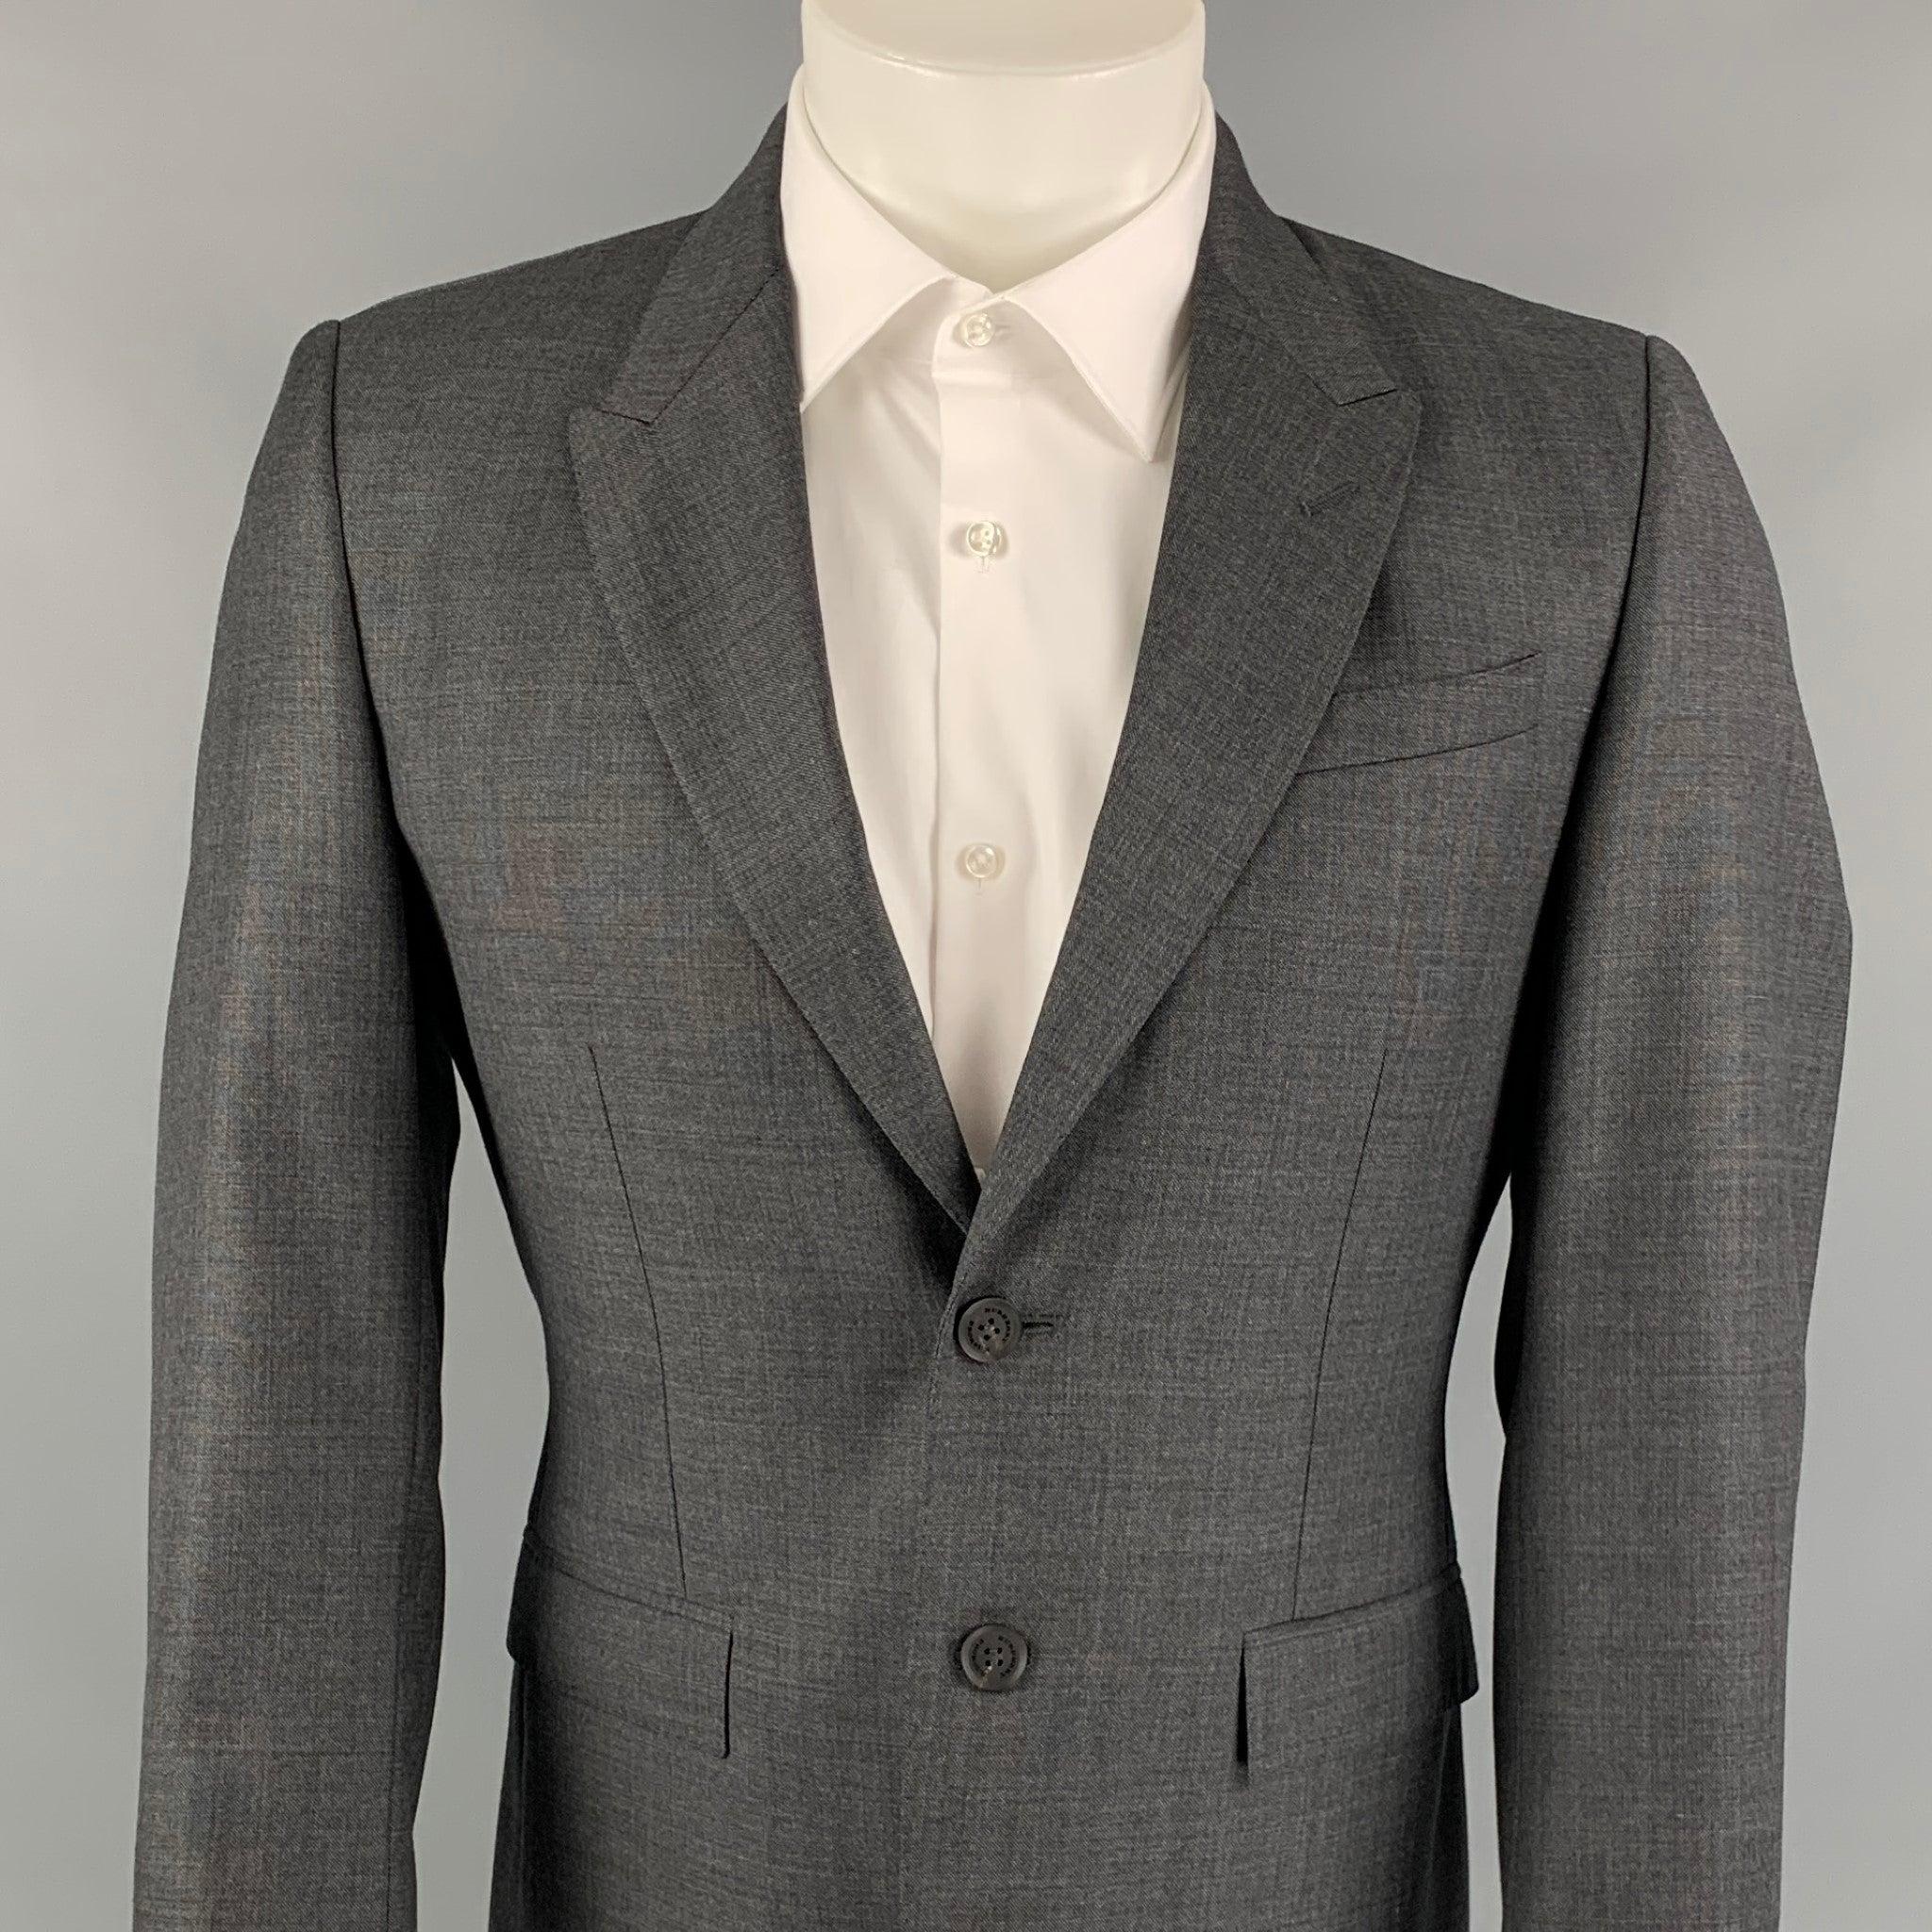 Le manteau de sport PRORSUM de Burberry se décline en gris ardoise avec un imprimé monogramme intégral. Il présente une coupe ajustée, un revers en pointe, des poches à rabat, une double fente au dos et une fermeture à deux boutons. Fabriquées en